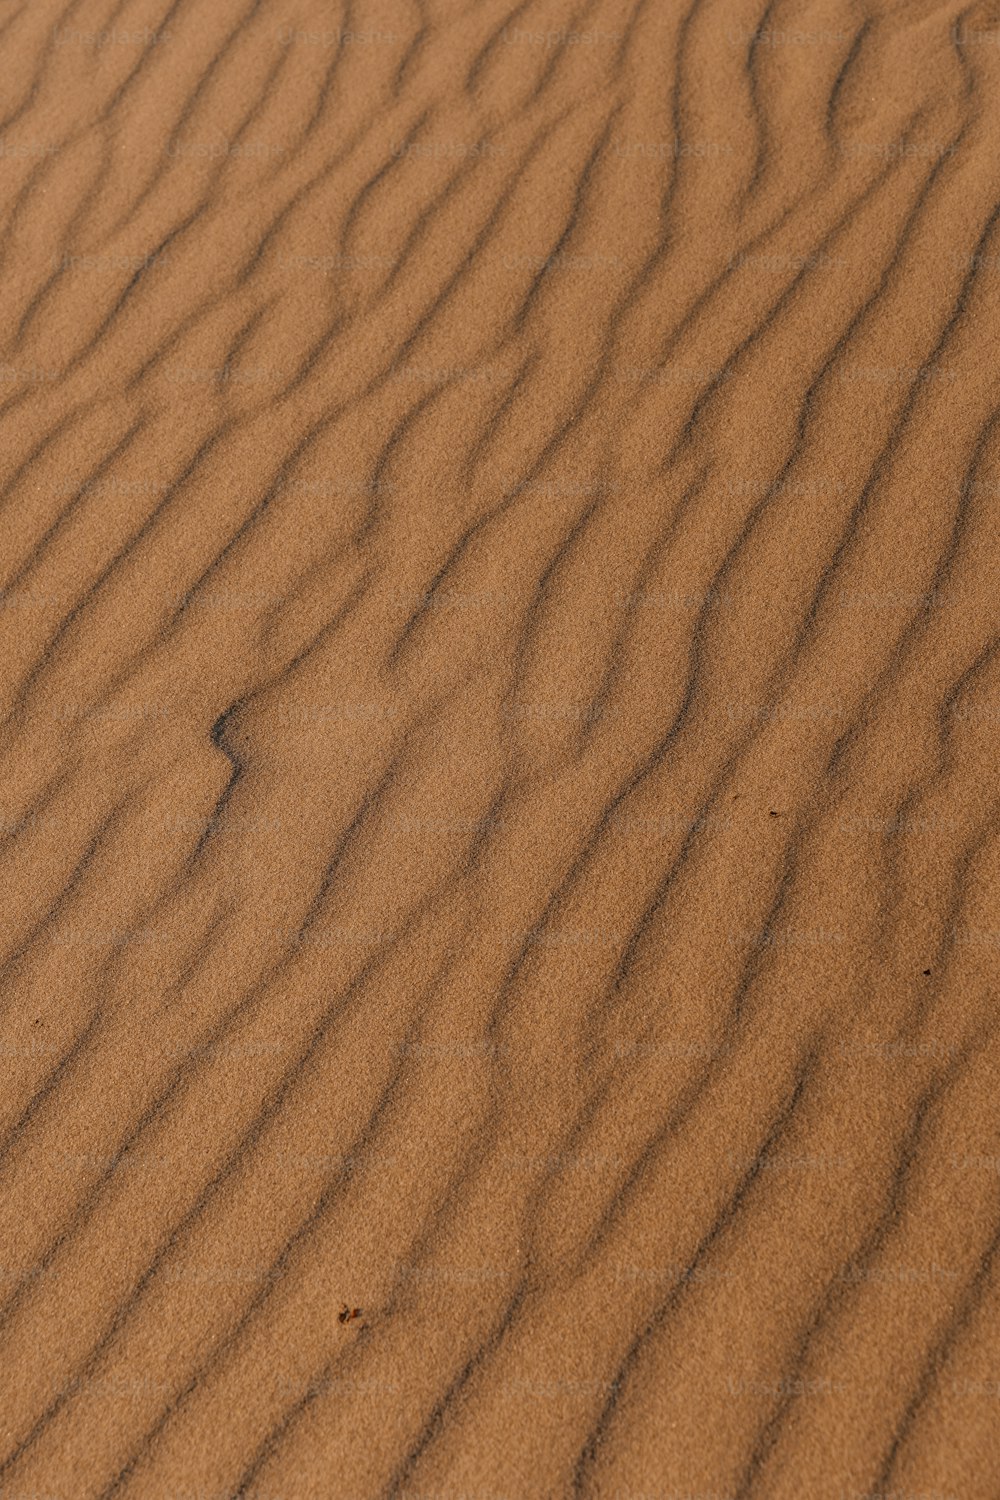 una duna di sabbia con una piccola macchia d'erba che cresce da essa